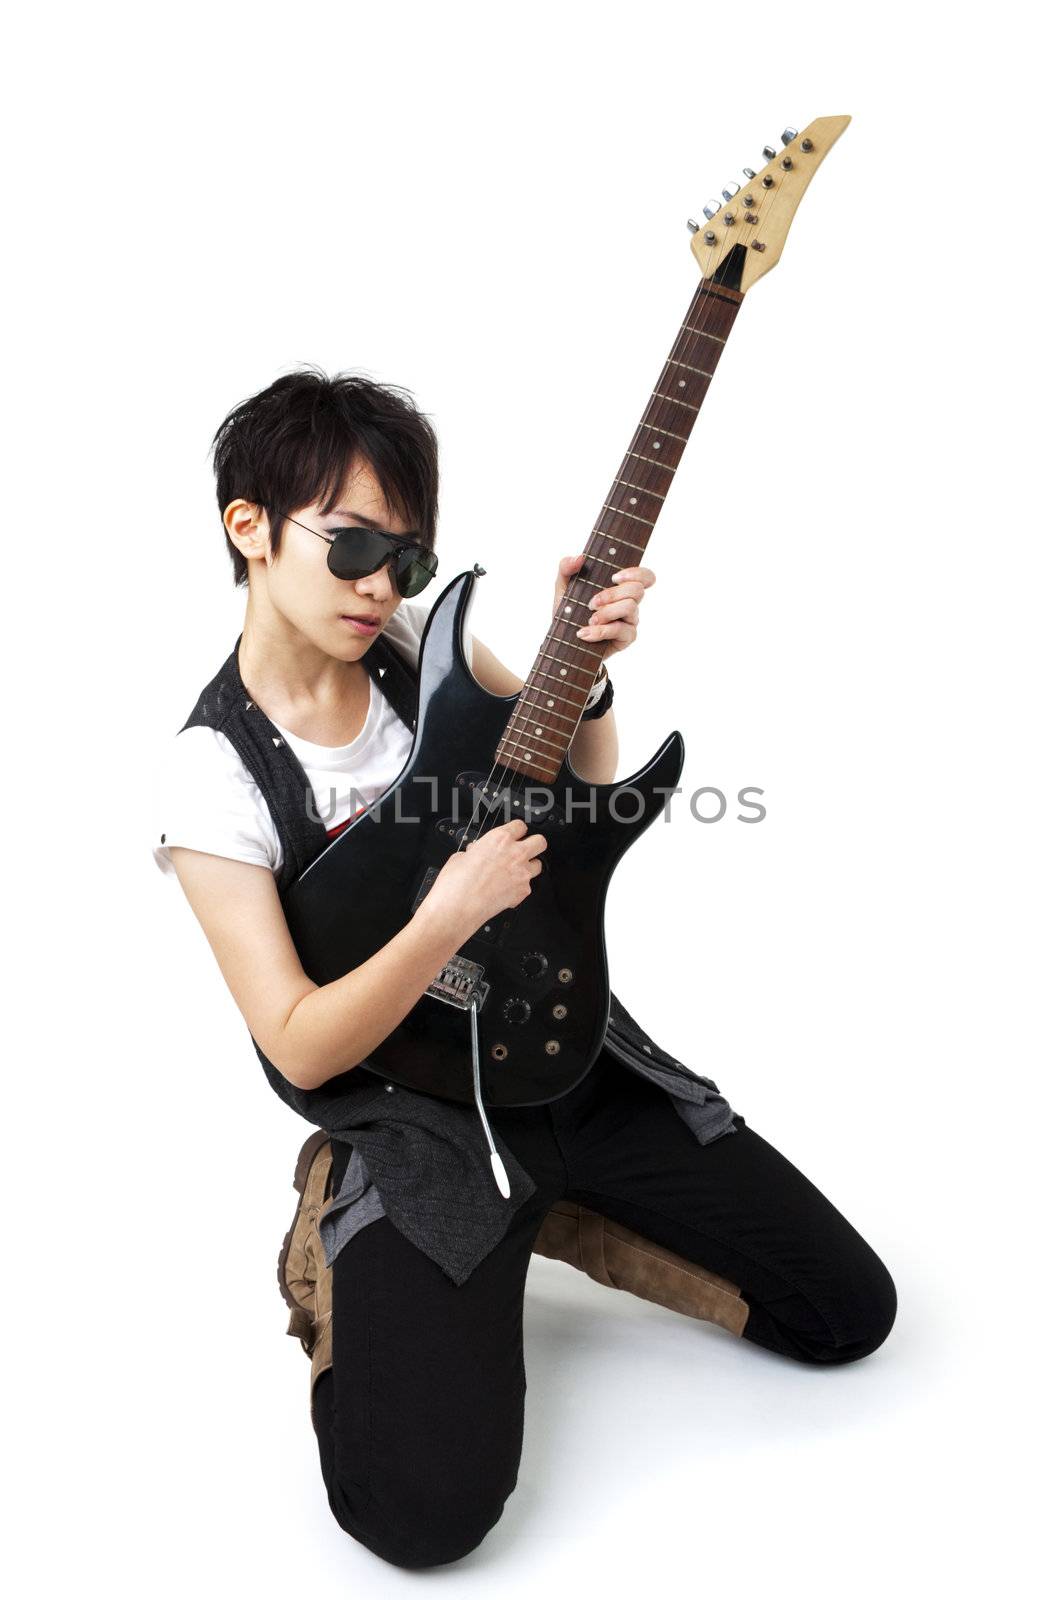 Punk Rockstar holding a guitar by szefei